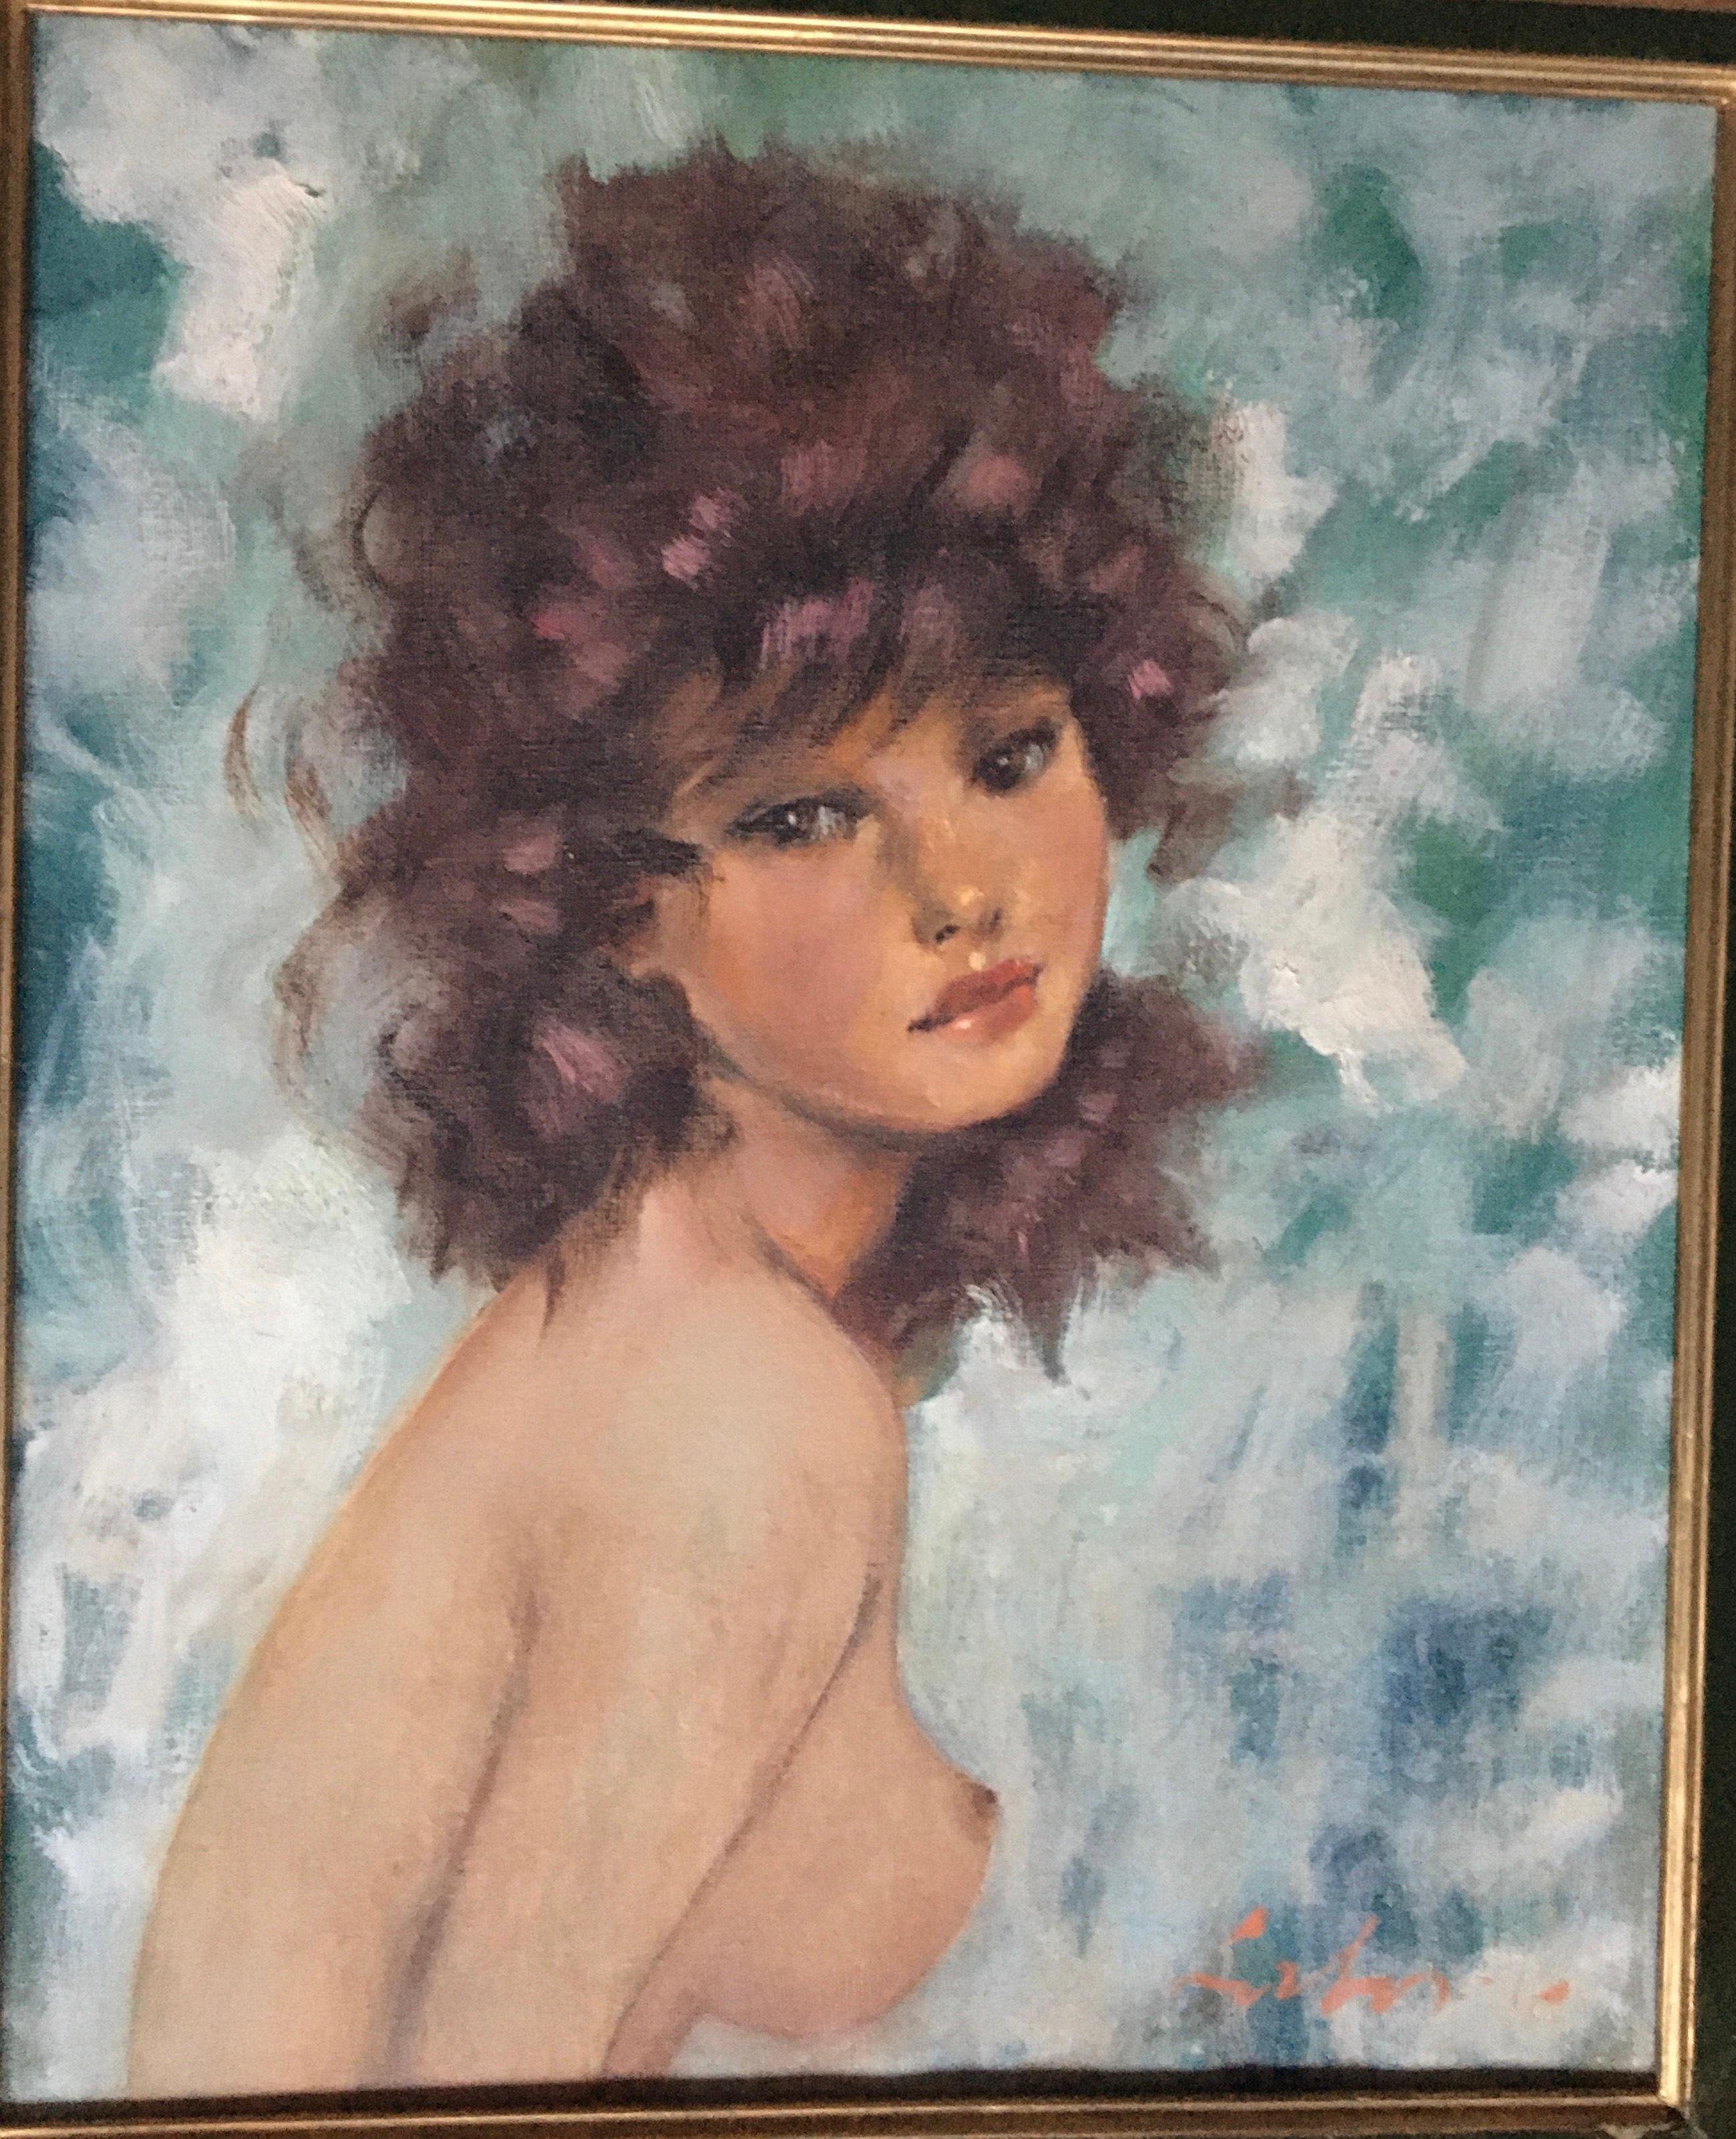 Schönes Öl auf Leinwand aus der französischen Schule der 60er Jahre, das auf sehr sinnliche Weise ein junges Mädchen mit nacktem Oberkörper darstellt.
Die Komposition erinnert an die Kunstwerke des berühmten Jean Gabriel Domergue, der in dieser Zeit